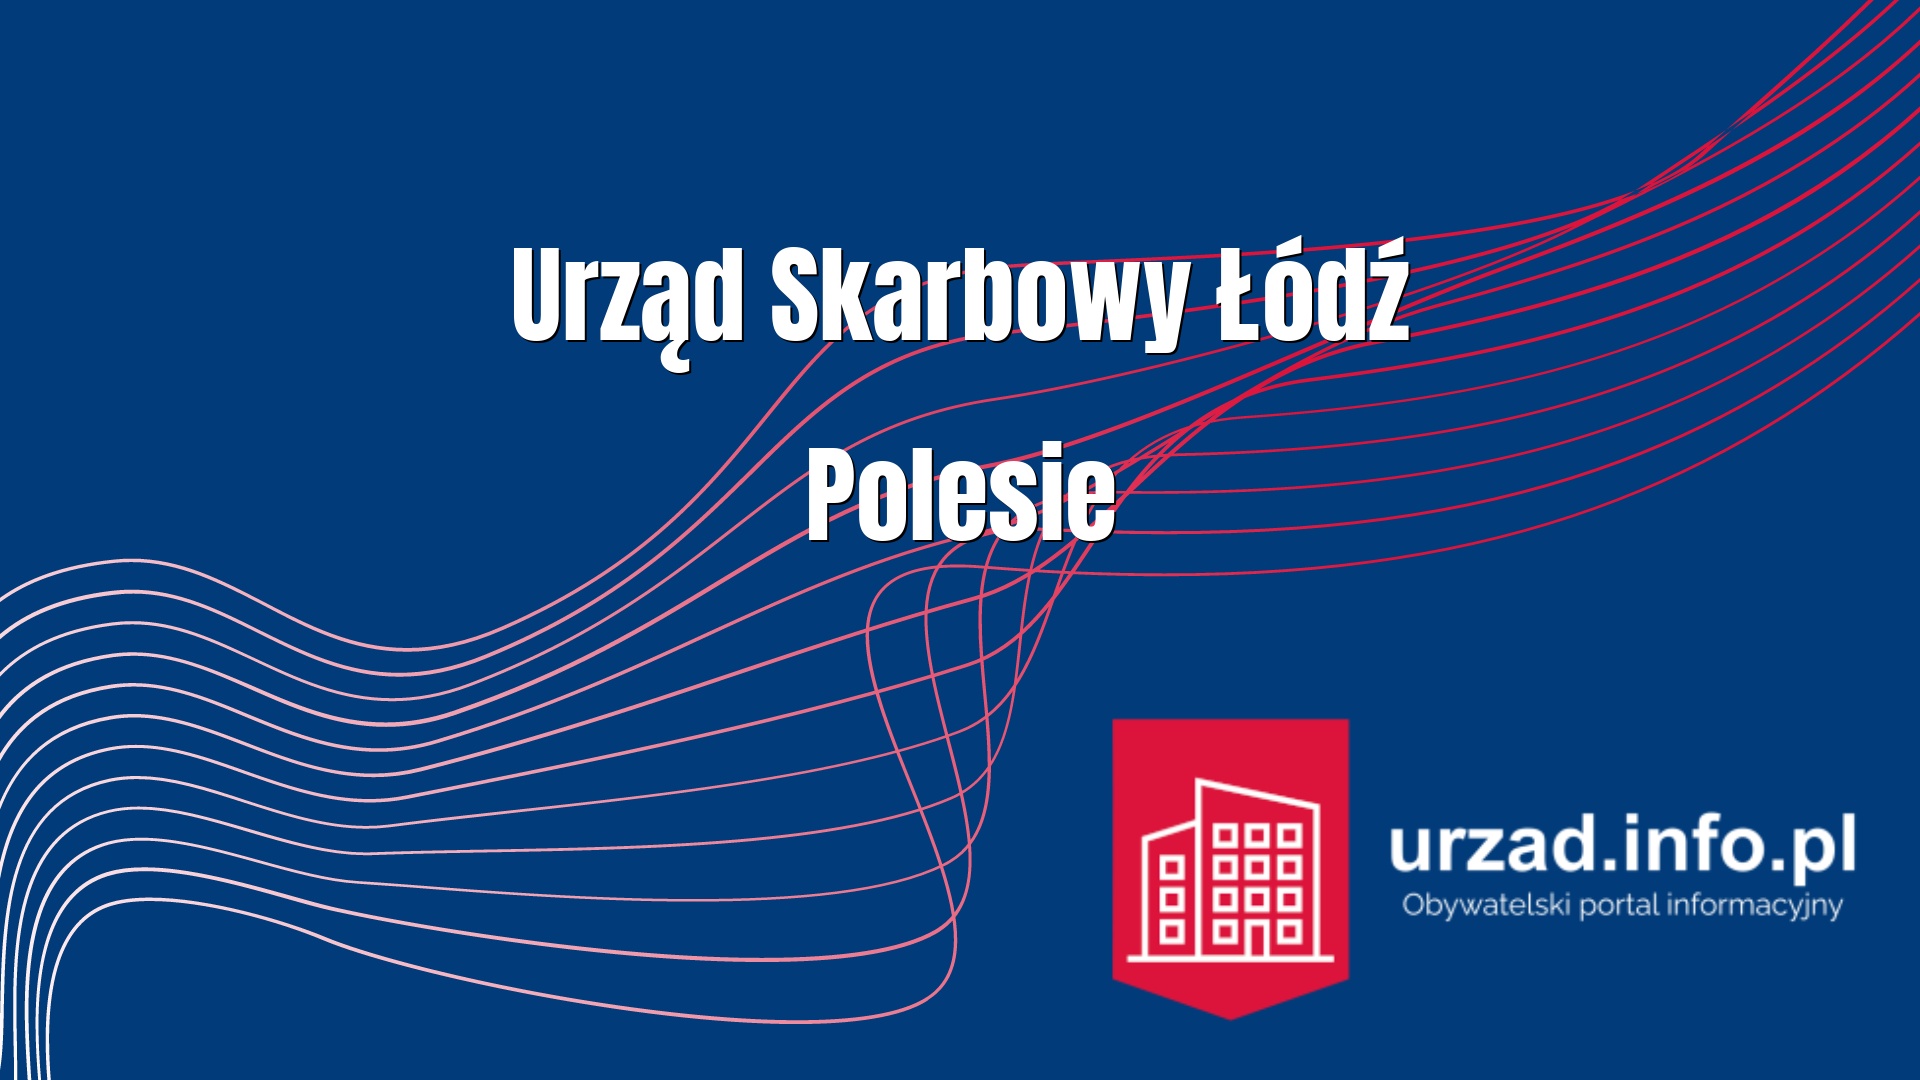 Urząd Skarbowy Łódź-Polesie